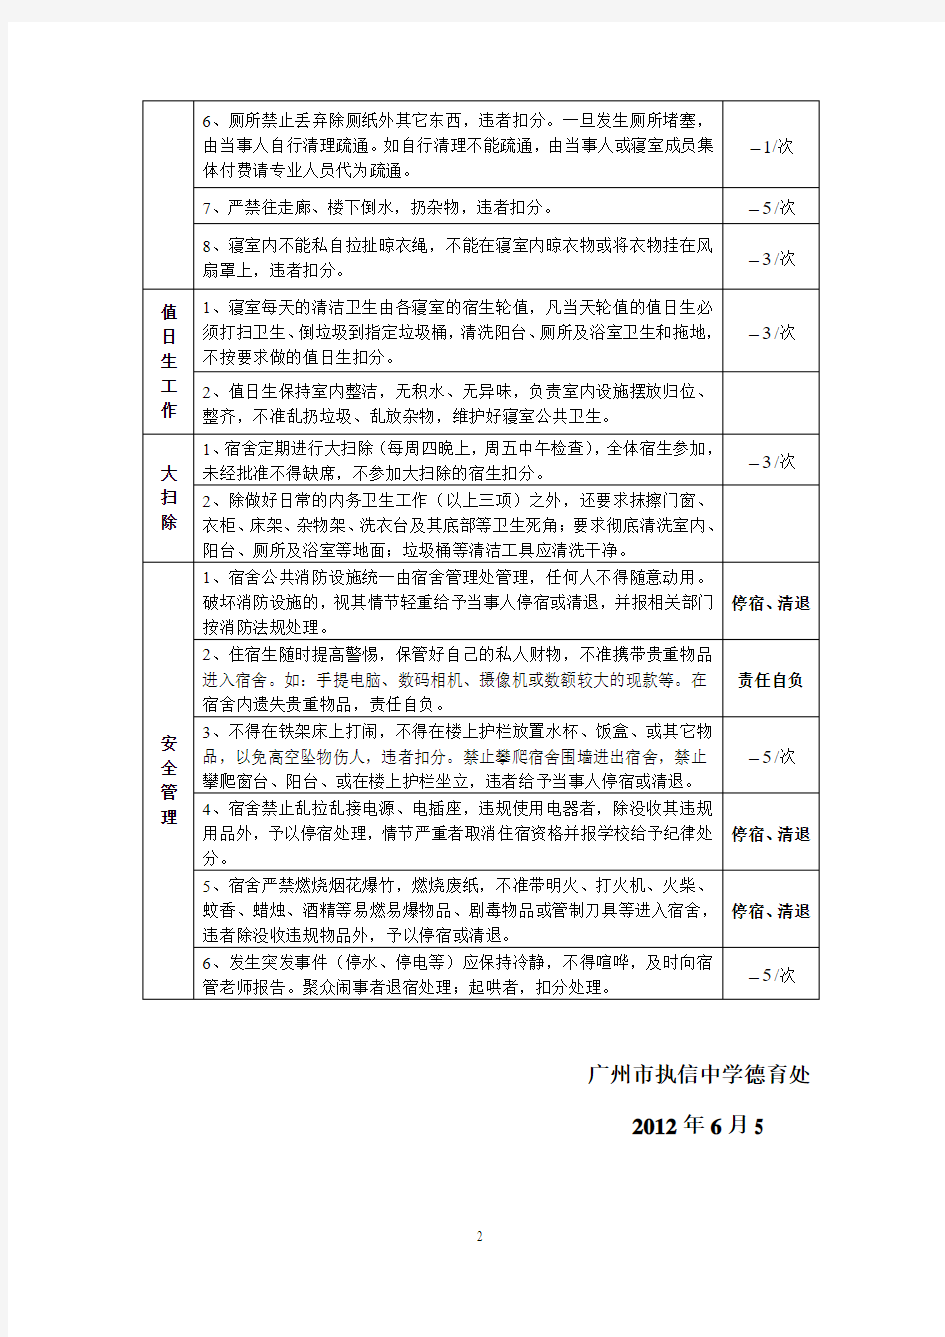 广州市执信中学住宿生管理评比细则及扣分标准